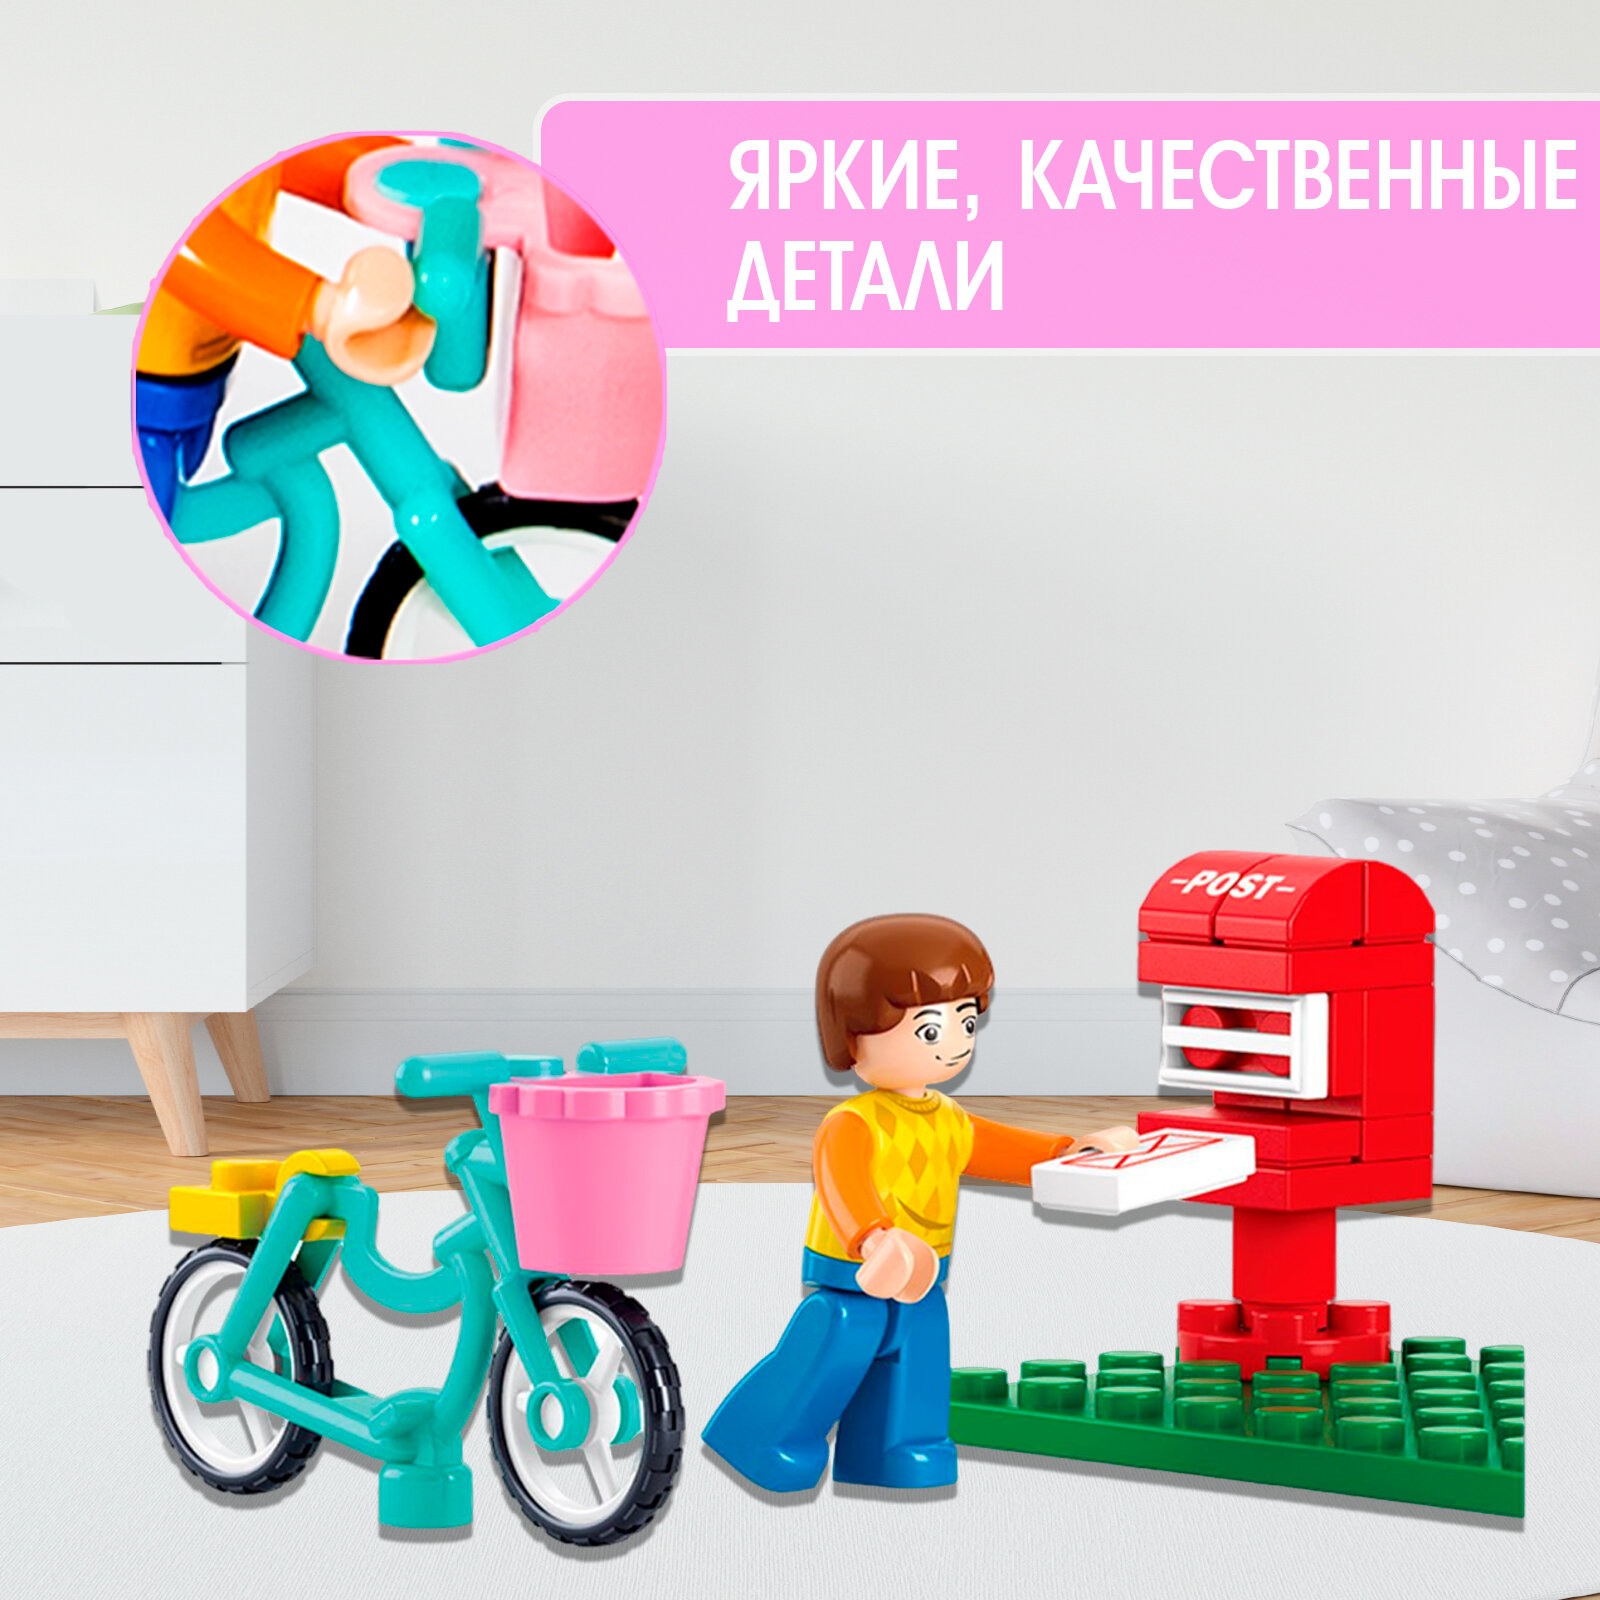 Детский конструктор Розовая мечта "Курьер на велосипеде", 29 деталей, для девочки